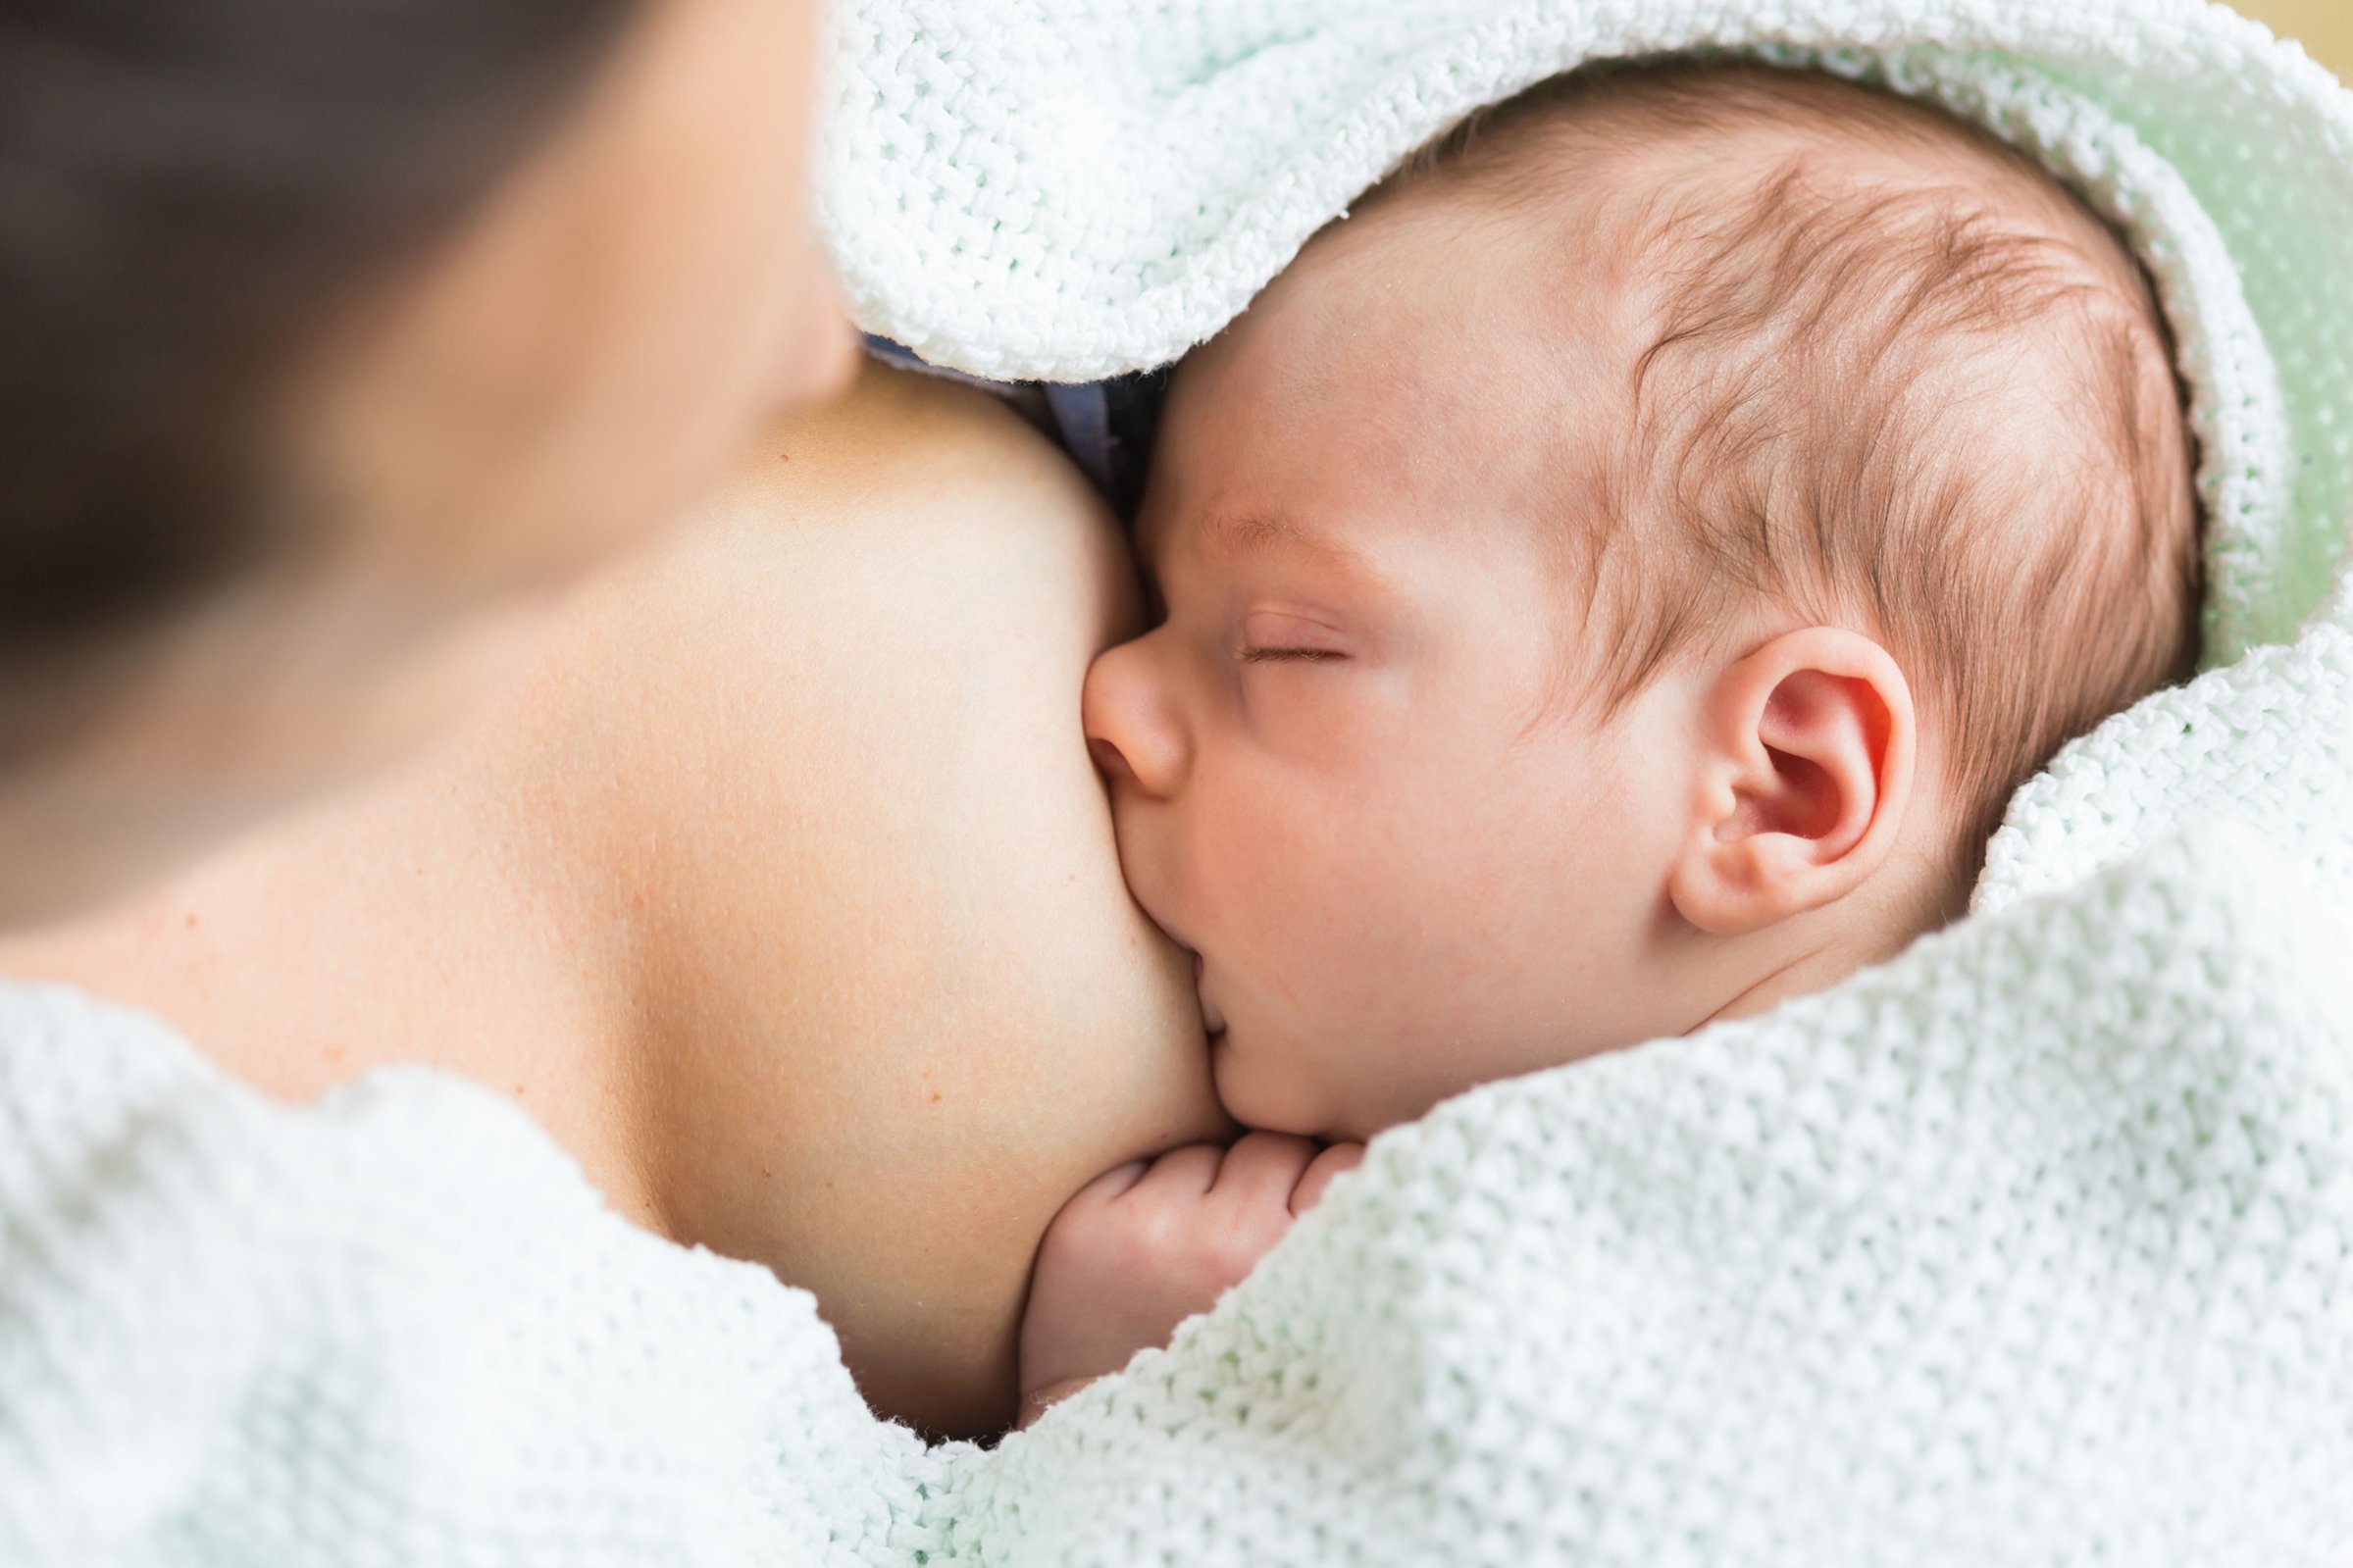 Breastfeeding debate in United States